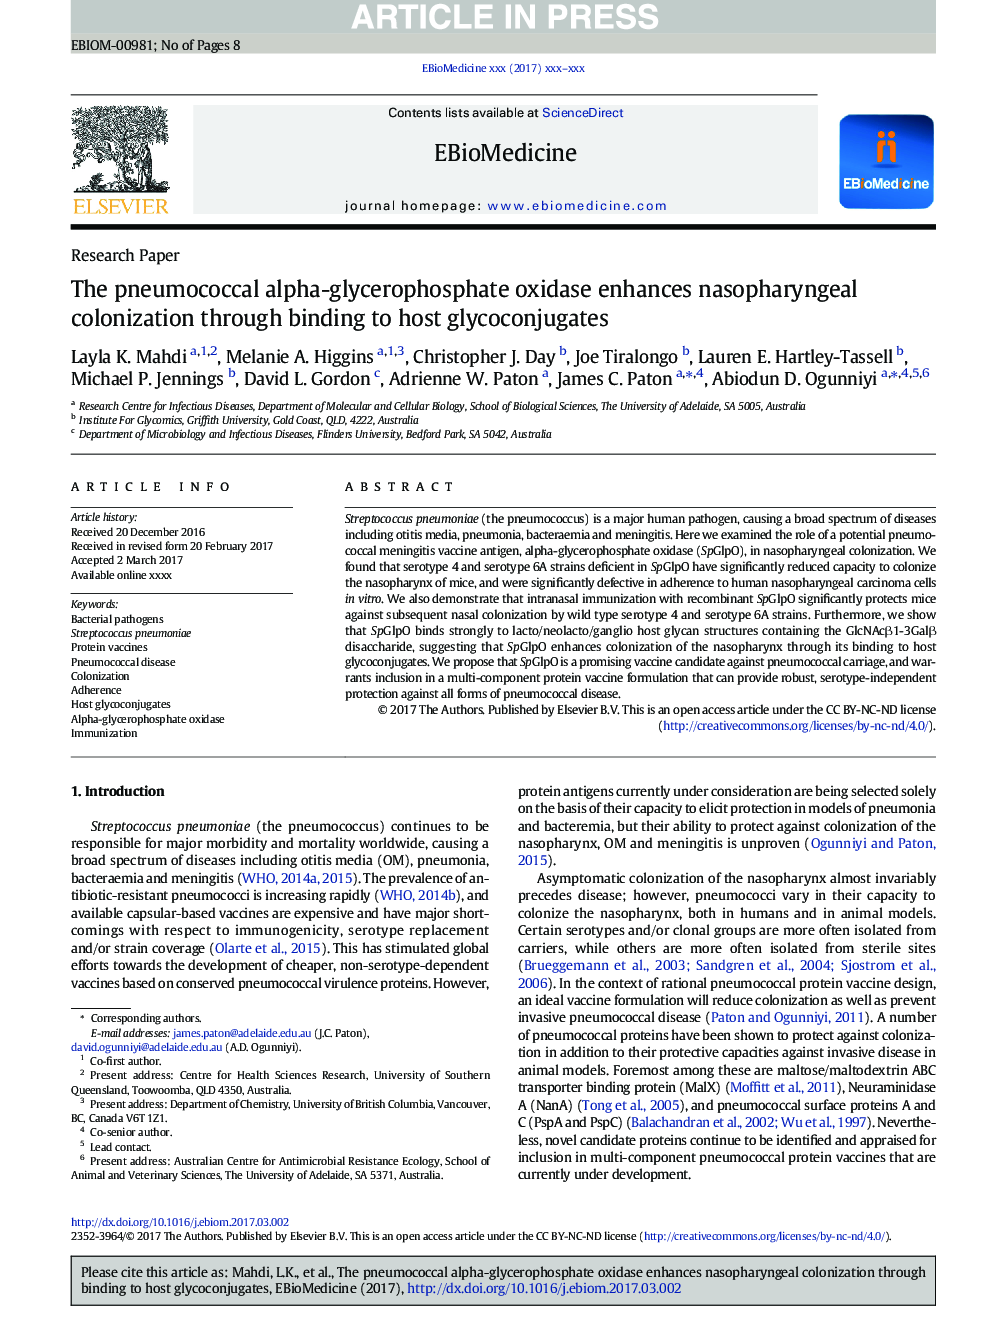 آلفا-گلیسروفسفات اکسیداز پنوموکوک آلزایمر نازوفارنکس را از طریق اتصال به گلیکوکونژوگهات میزبان افزایش می دهد 